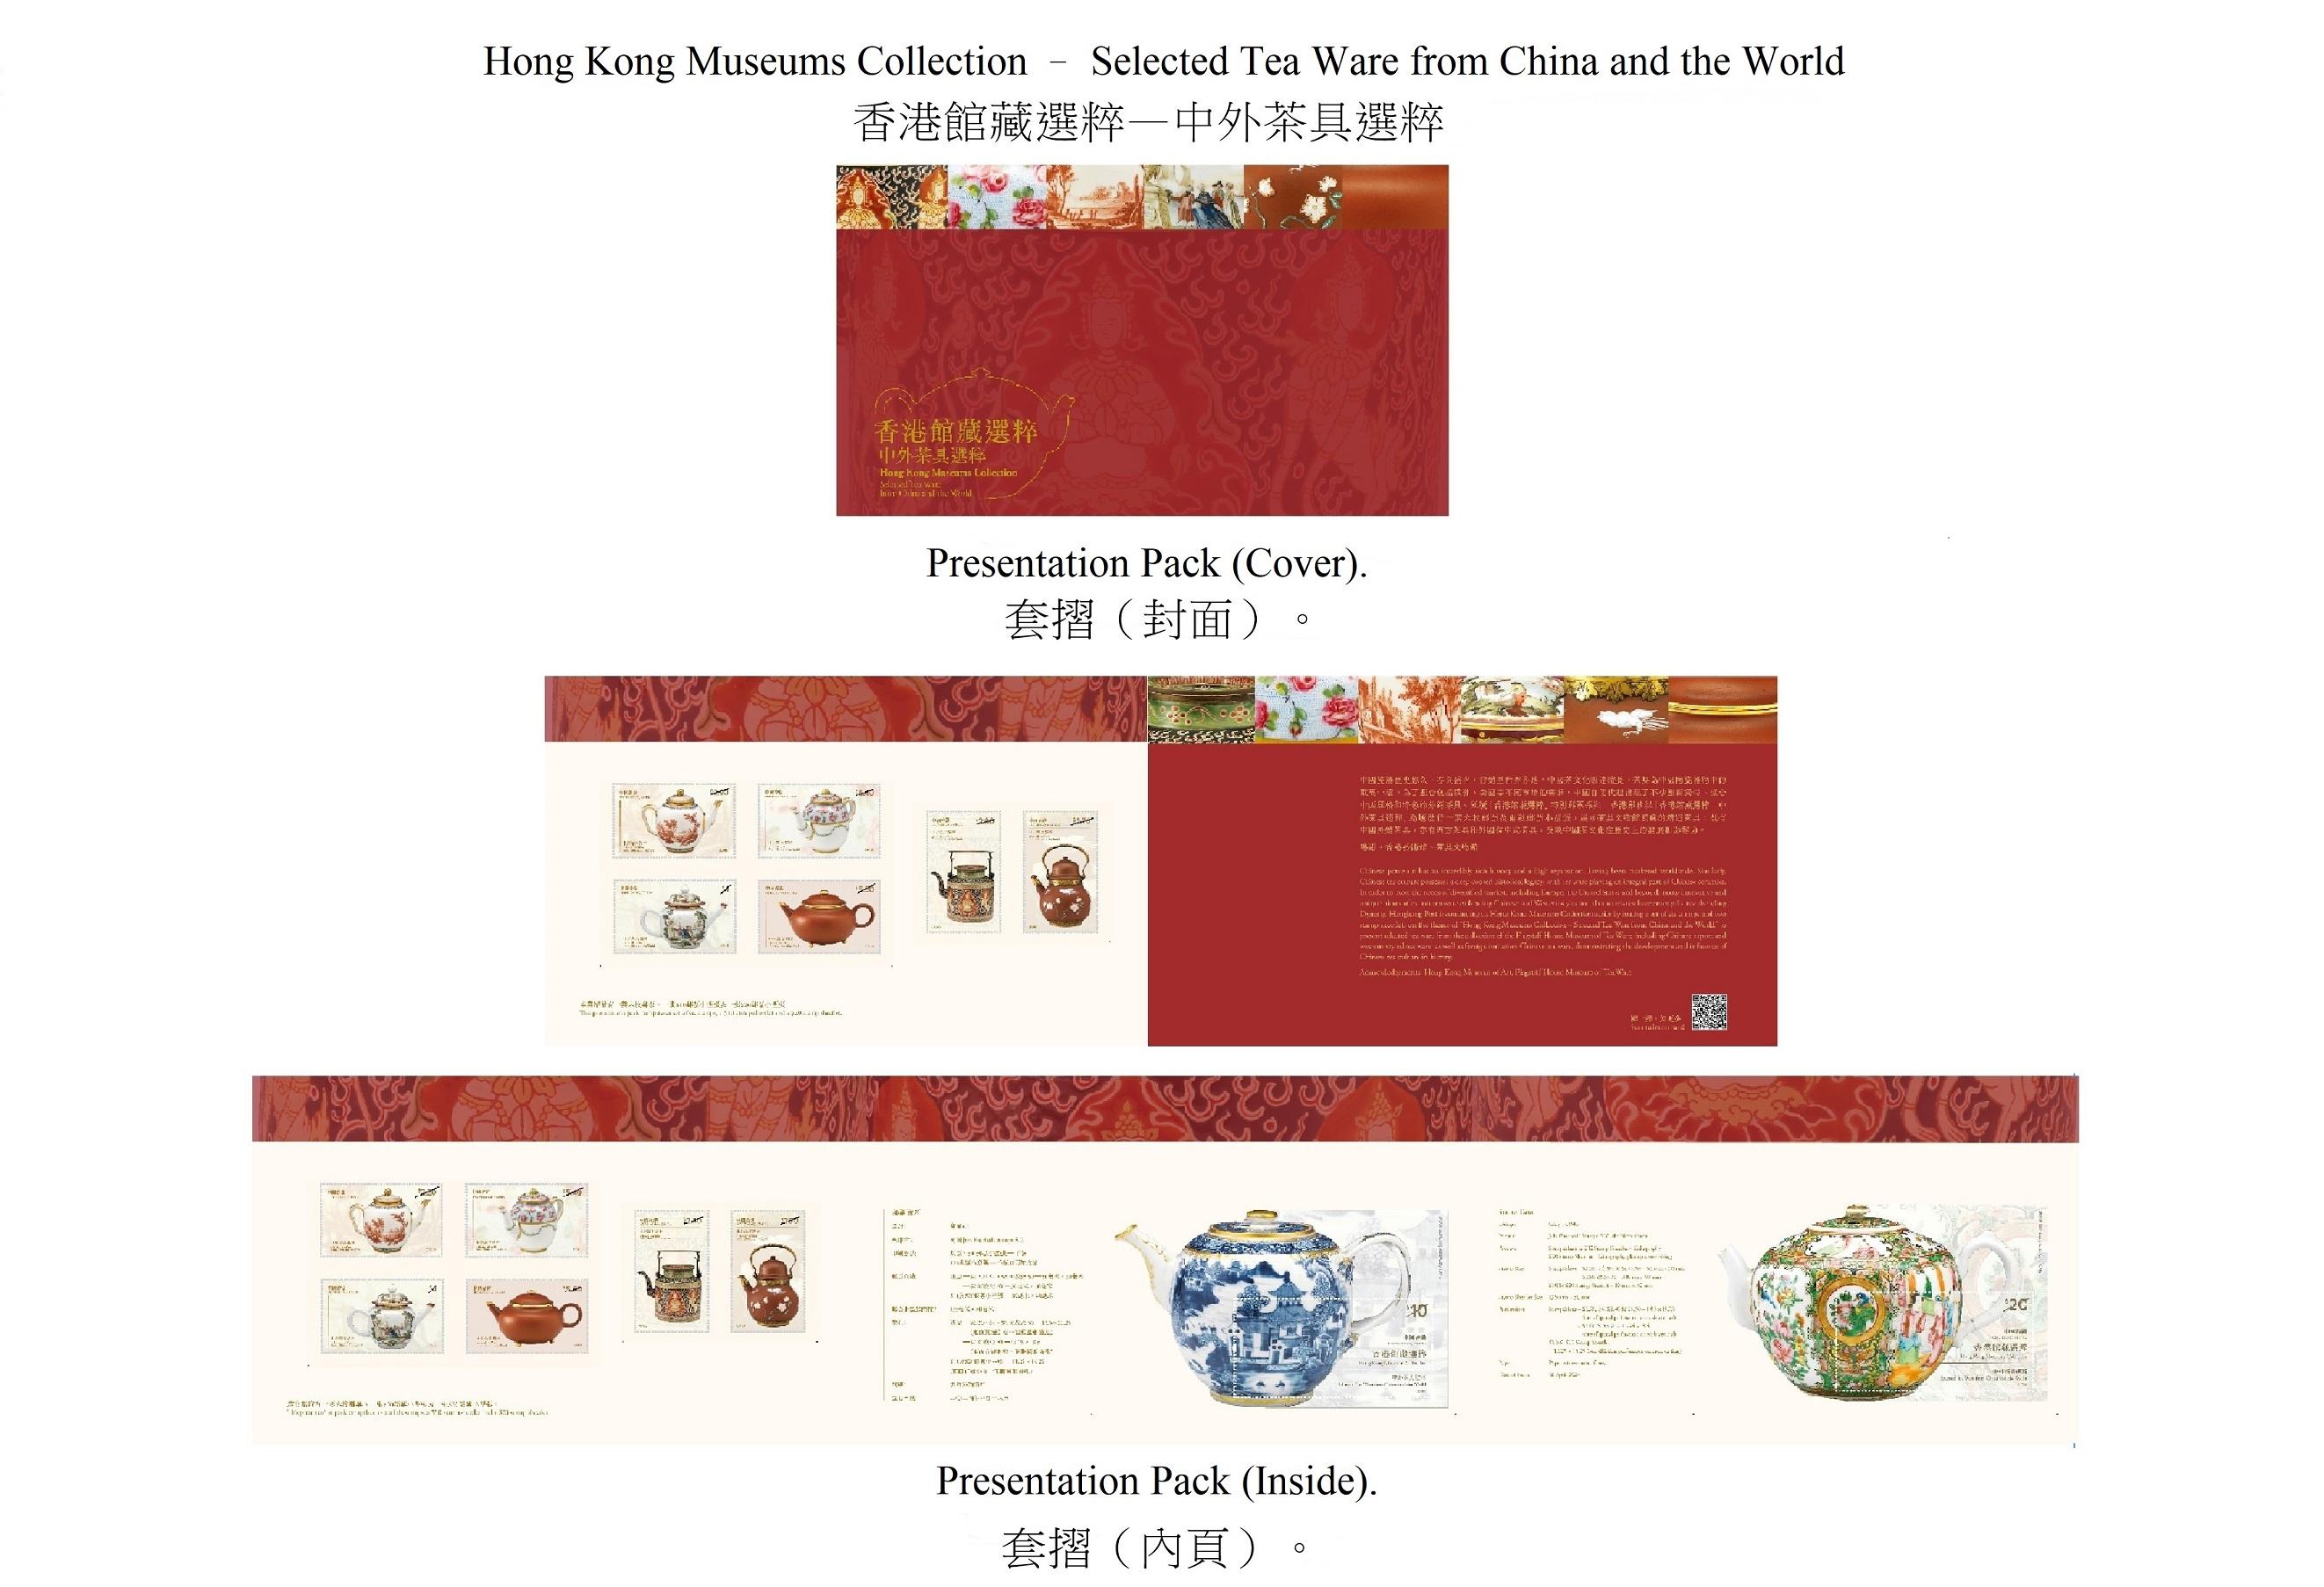 香港邮政四月十八日（星期四）发行以「香港馆藏选粹──中外茶具选粹」为题的特别邮票及相关集邮品。图示套折。